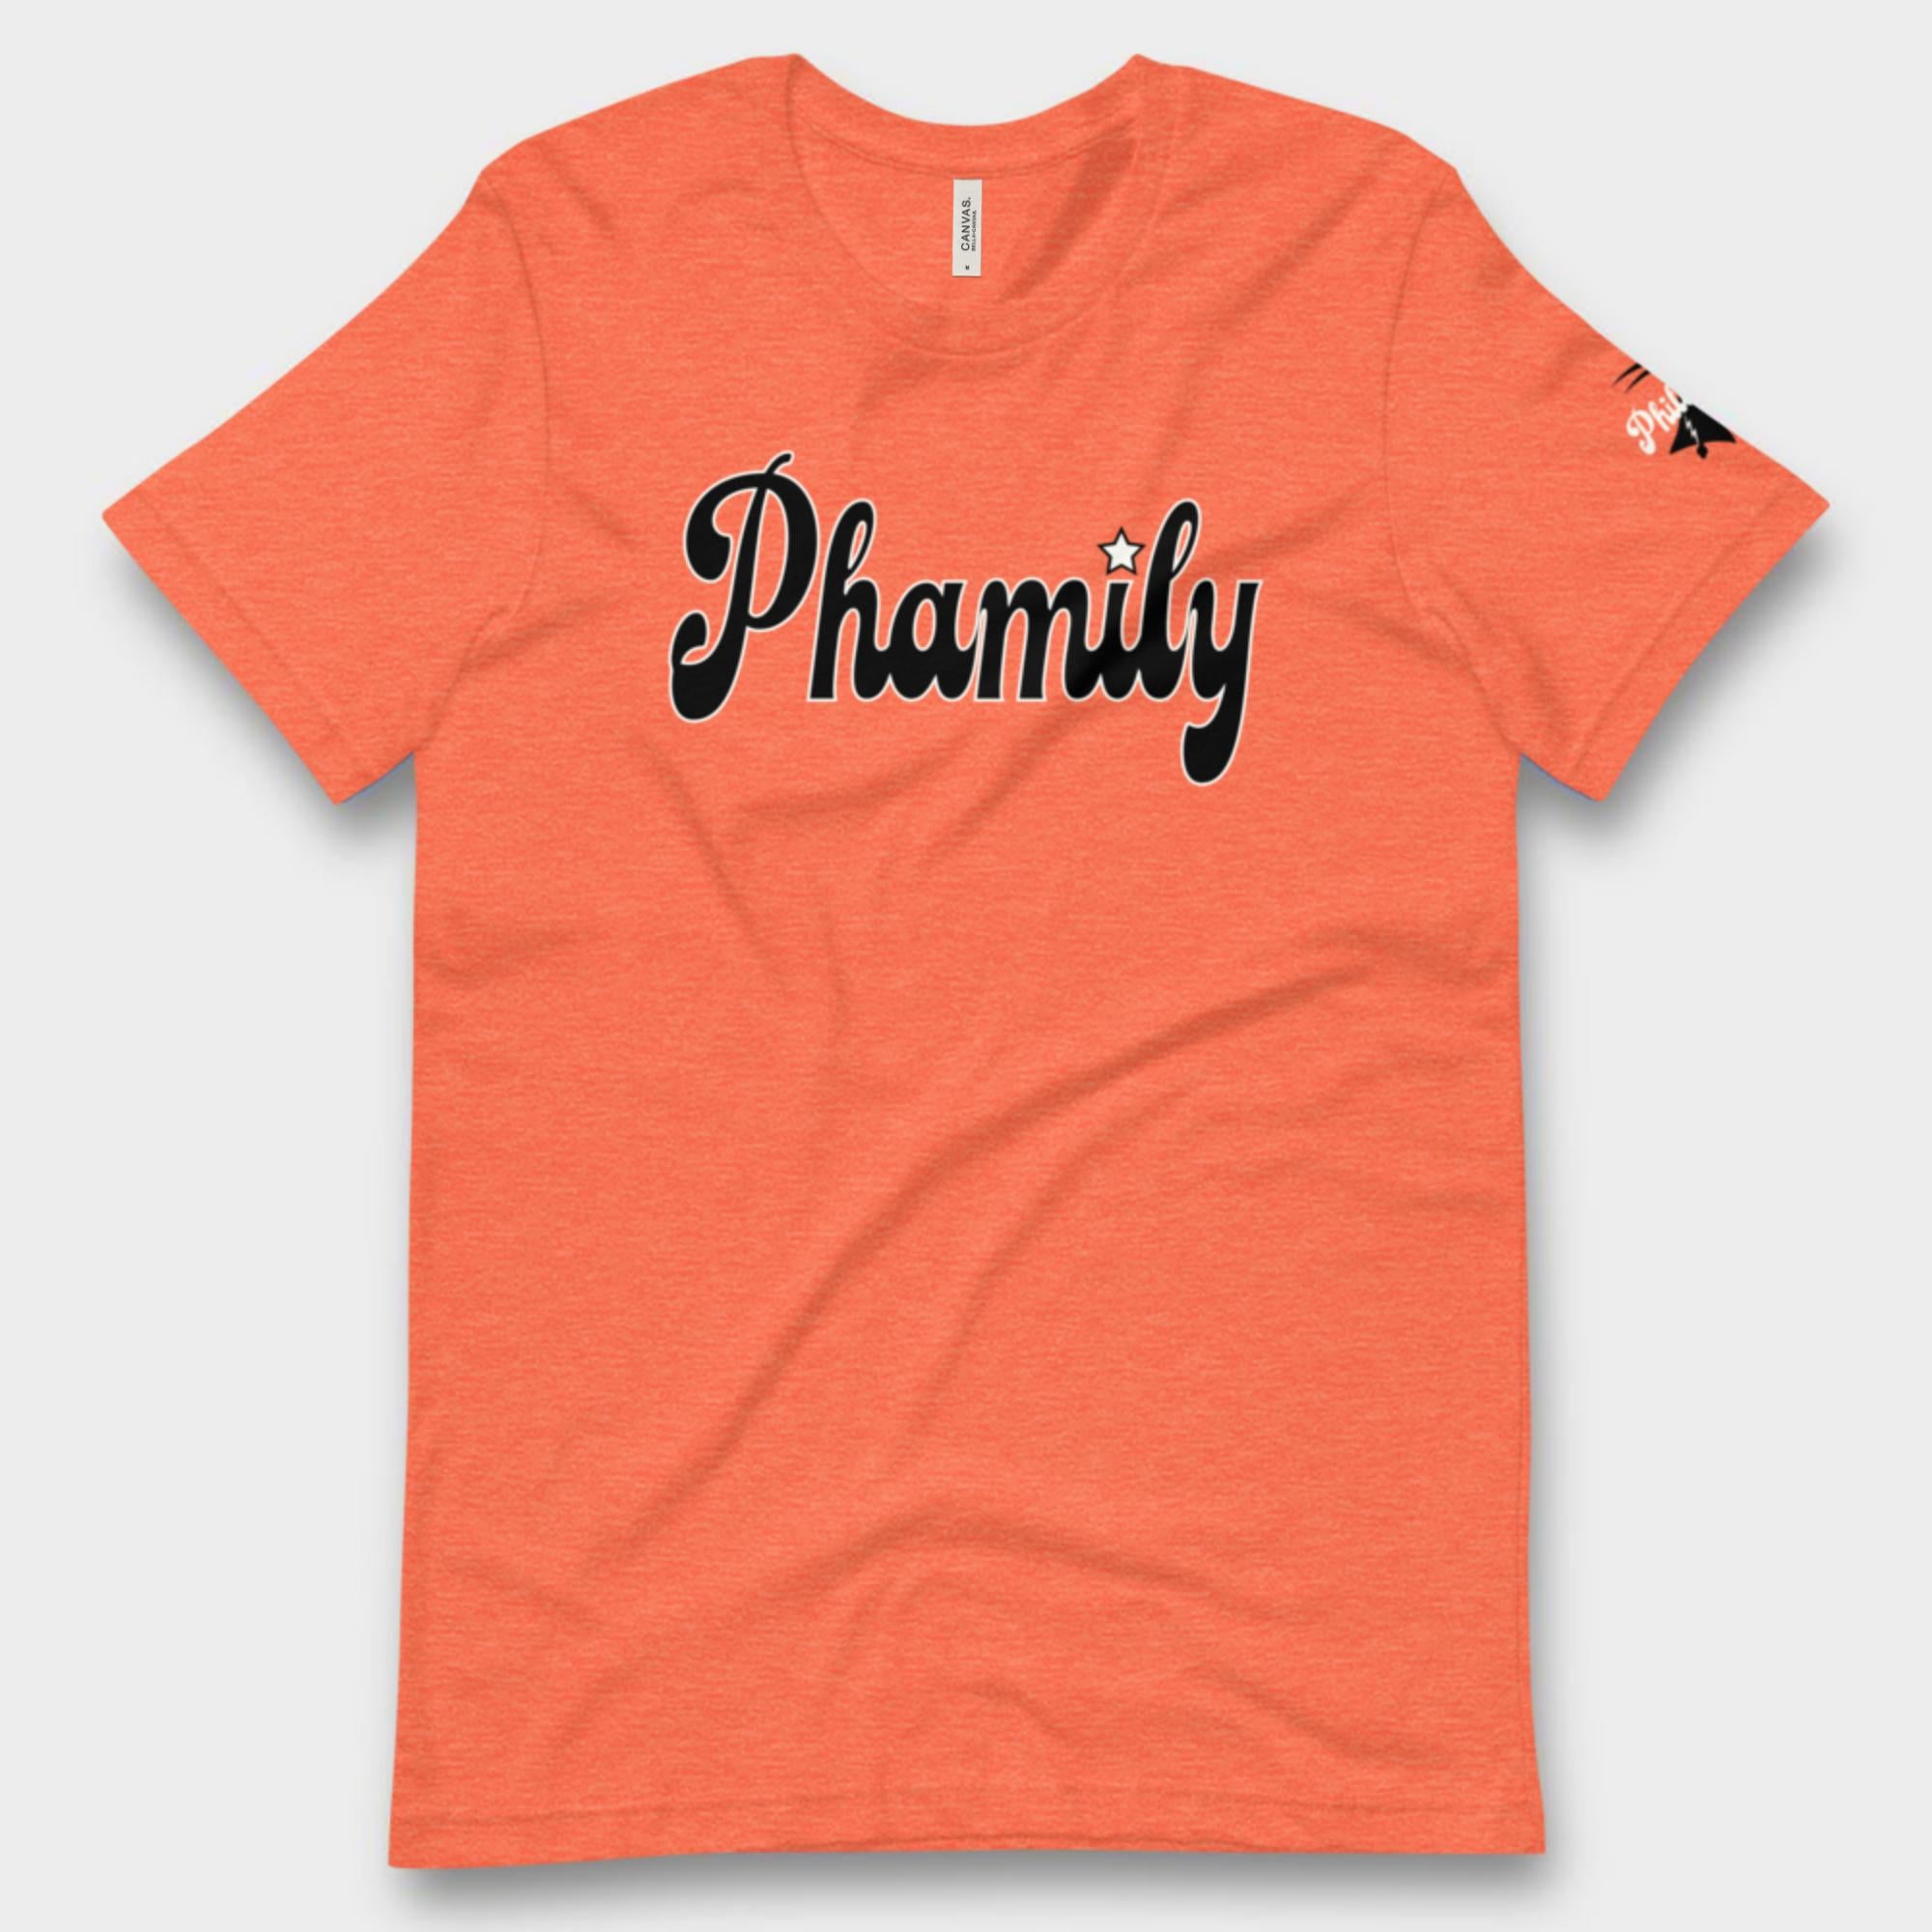 "Phamily" Tee